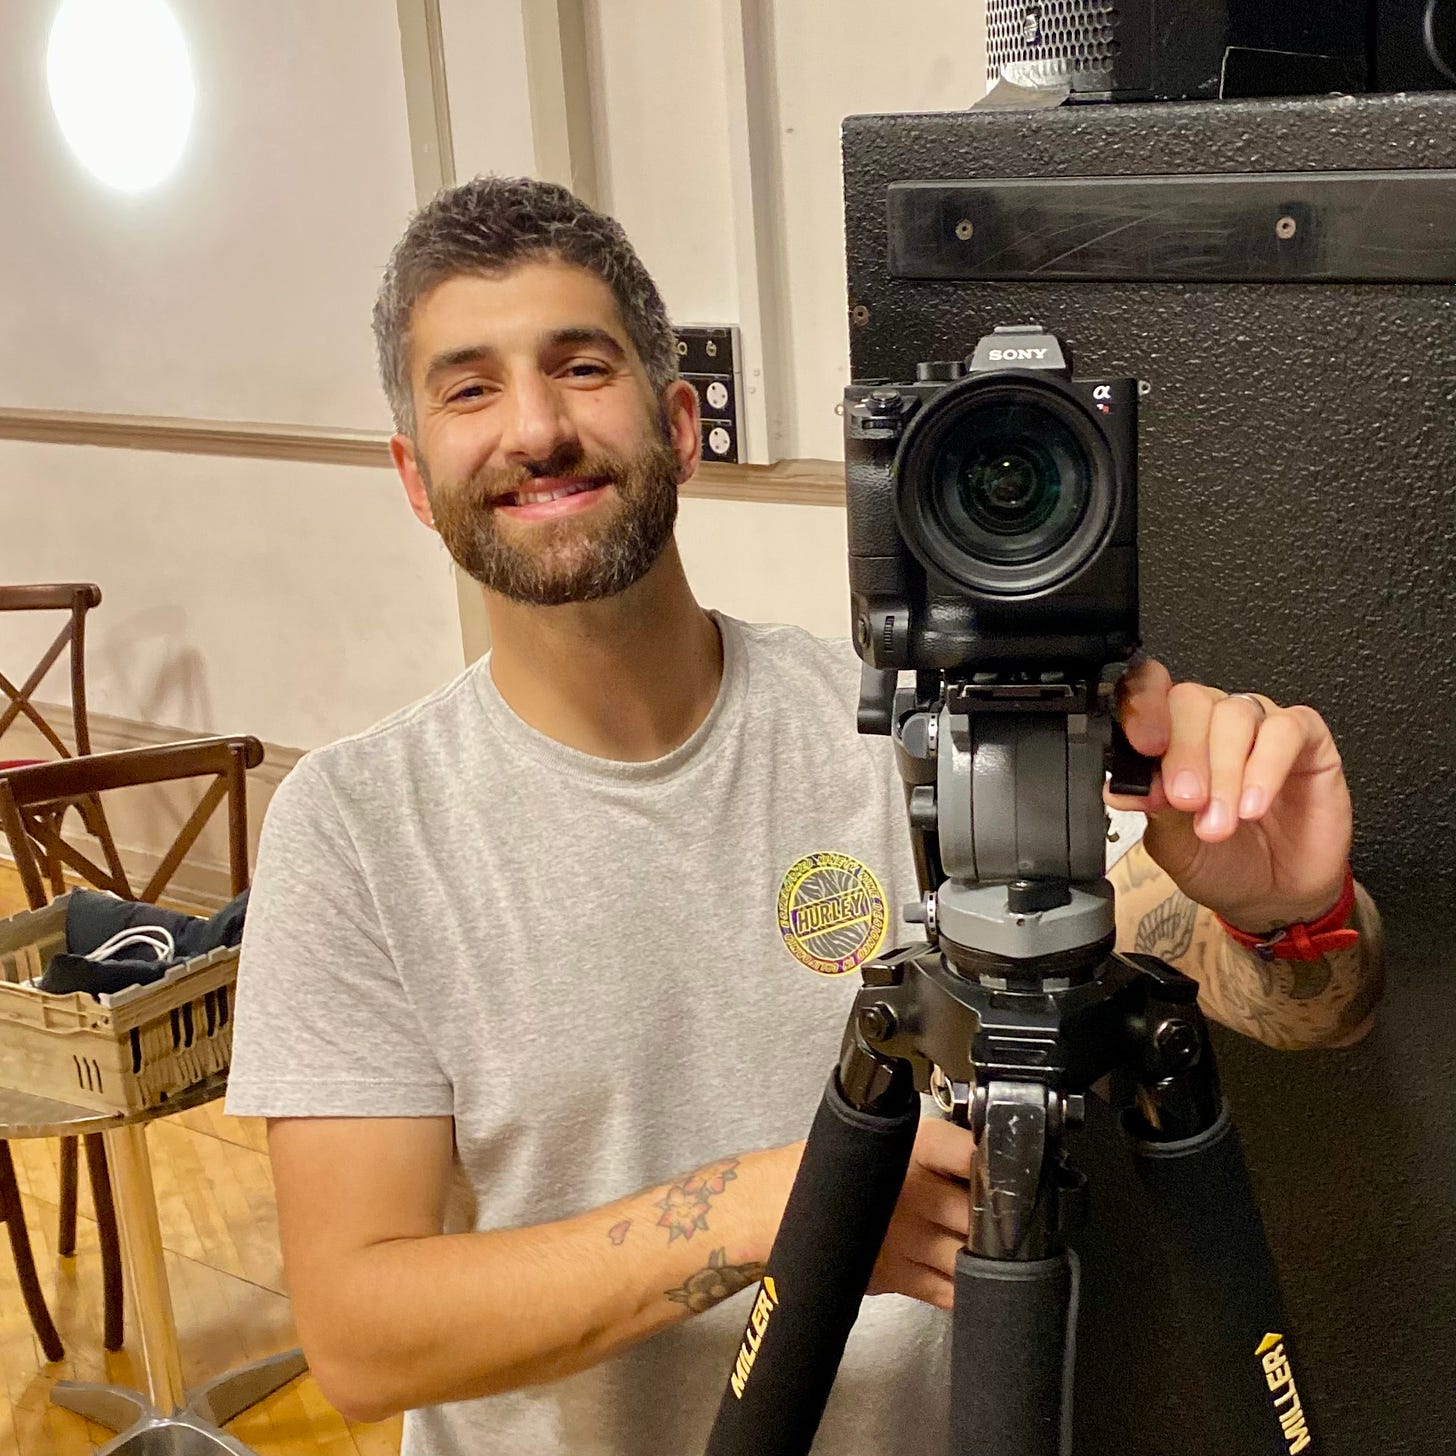 Dario Leonetti - a man smiling with a camera on a tripod